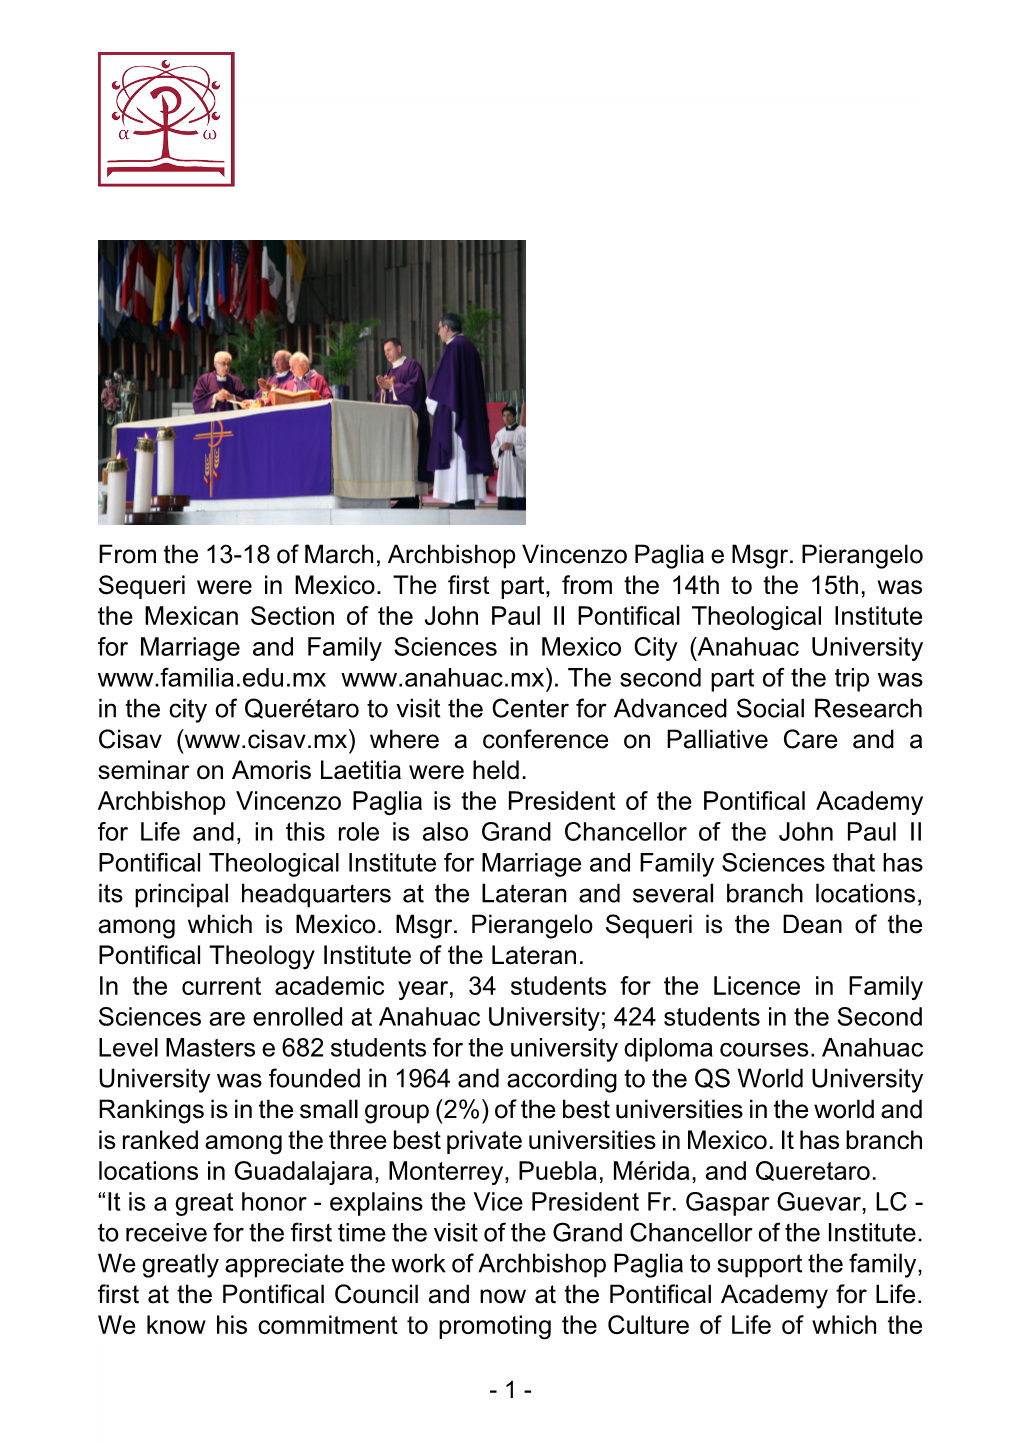 From the 13-18 of March, Archbishop Vincenzo Paglia E Msgr. Pierangelo Sequeri Were in Mexico